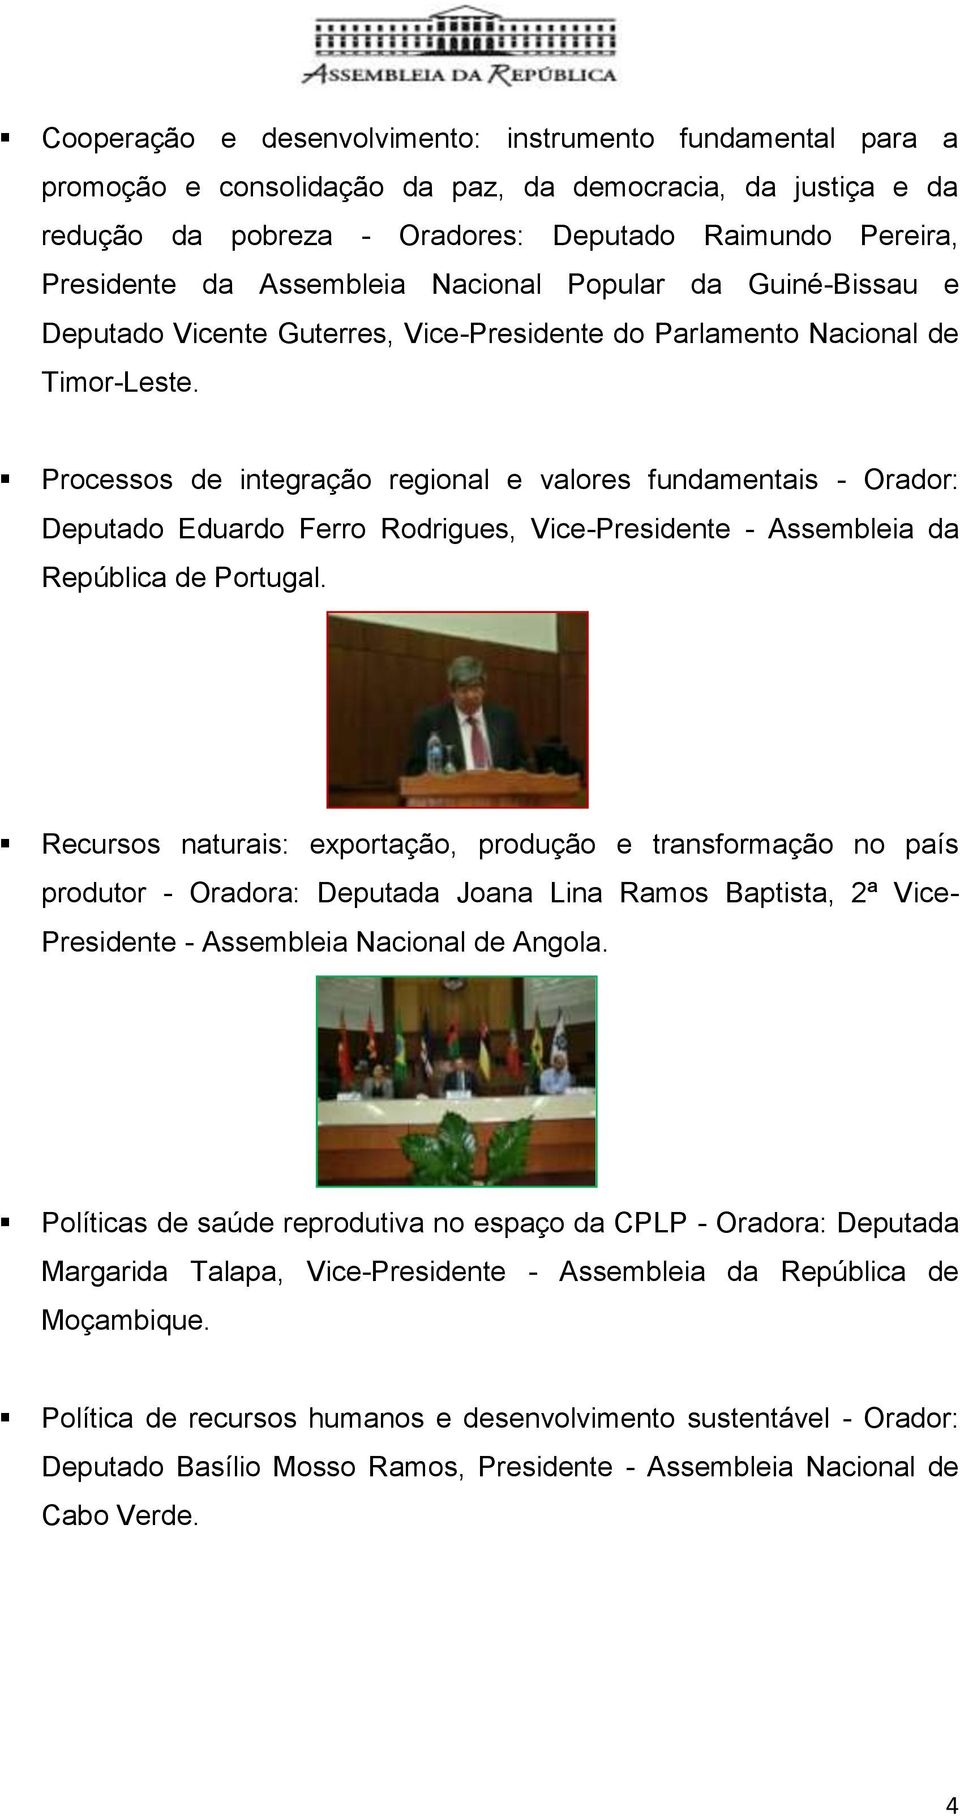 Processos de integração regional e valores fundamentais - Orador: Deputado Eduardo Ferro Rodrigues, Vice-Presidente - Assembleia da República de Portugal.